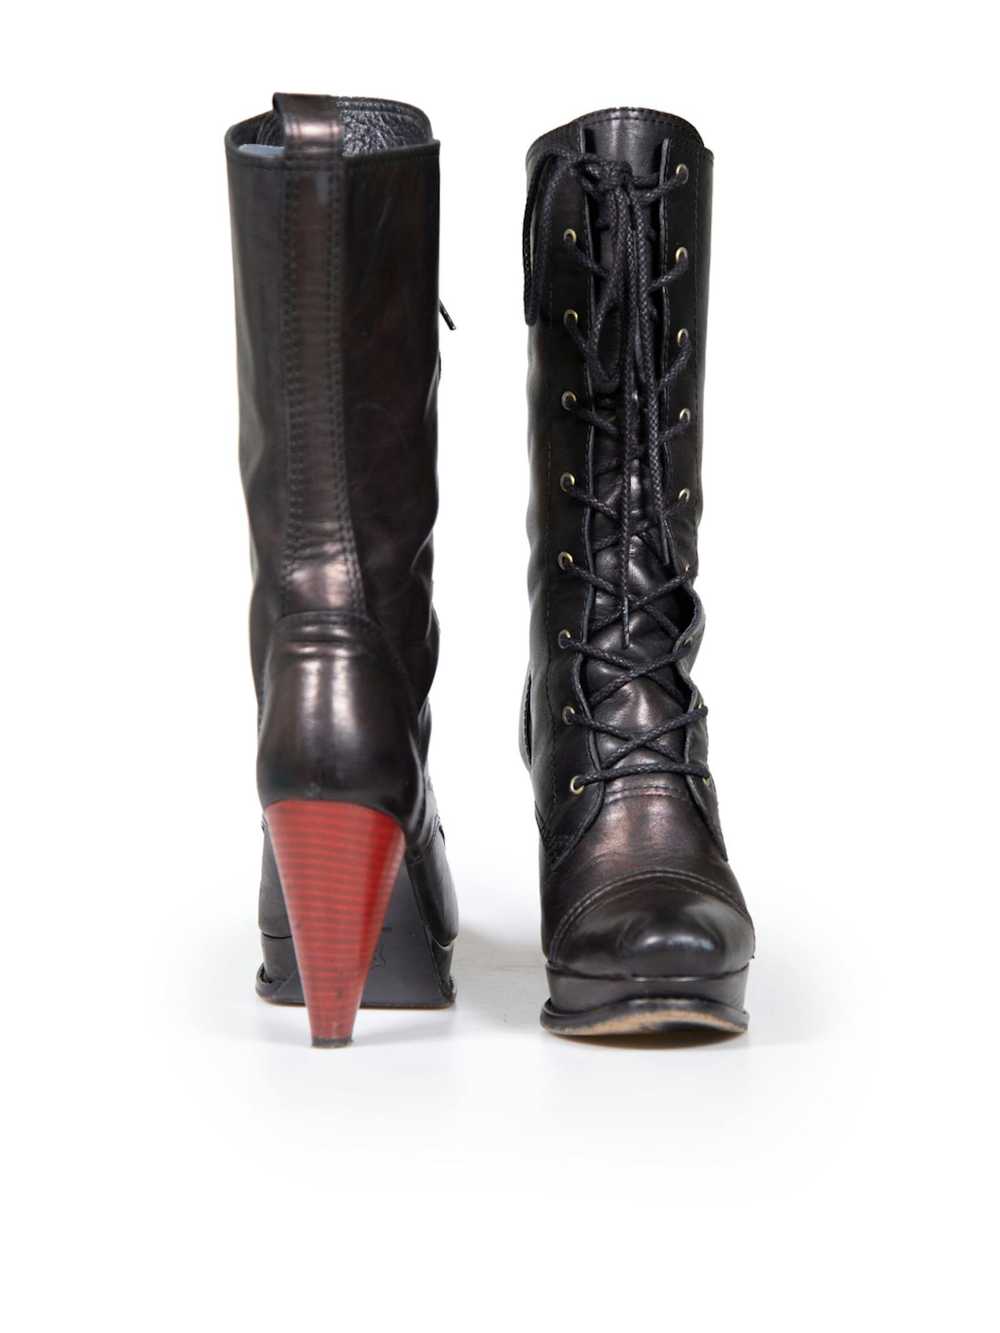 Yohji Yamamoto Black Leather Laced Platform Boots - image 3